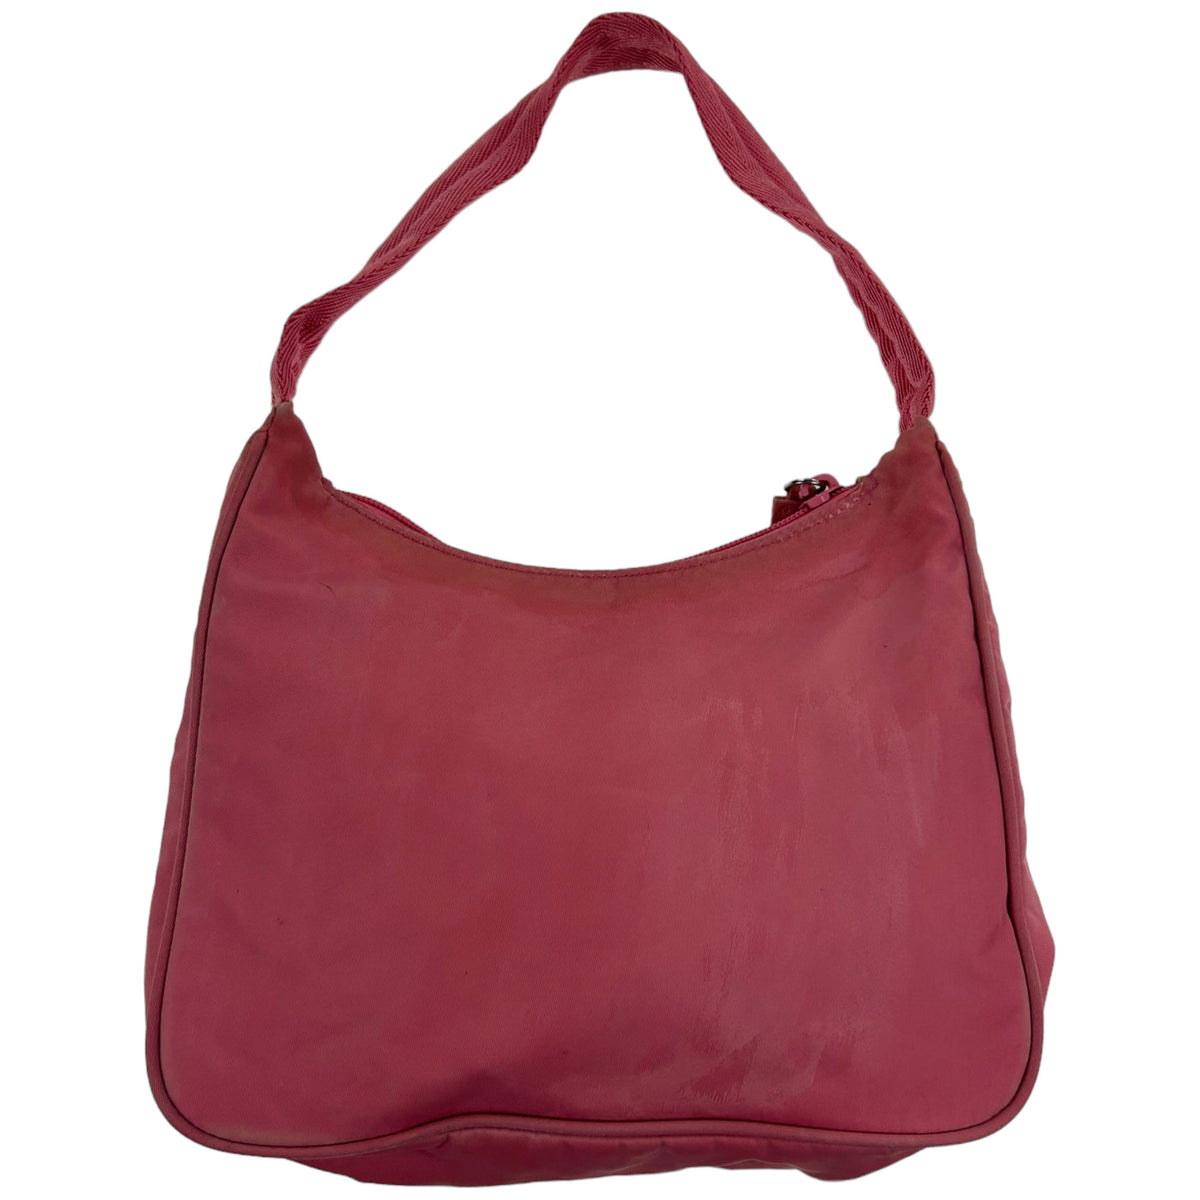 Vintage Prada Nylon Shoulder Bag